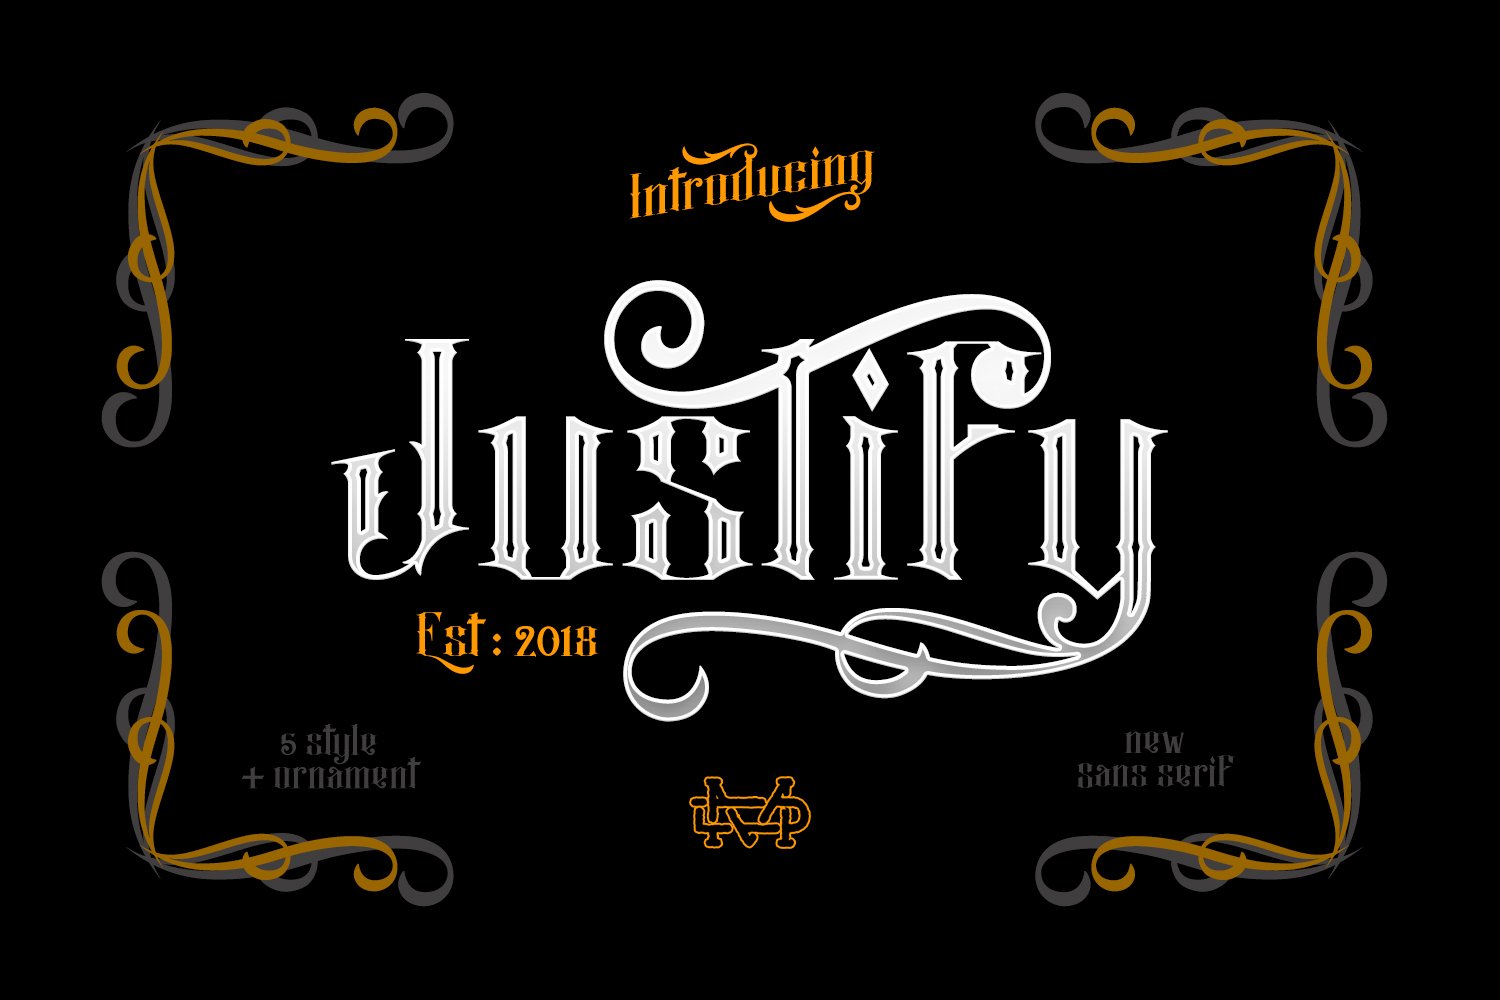 Justify I Blackletter Font cover image.